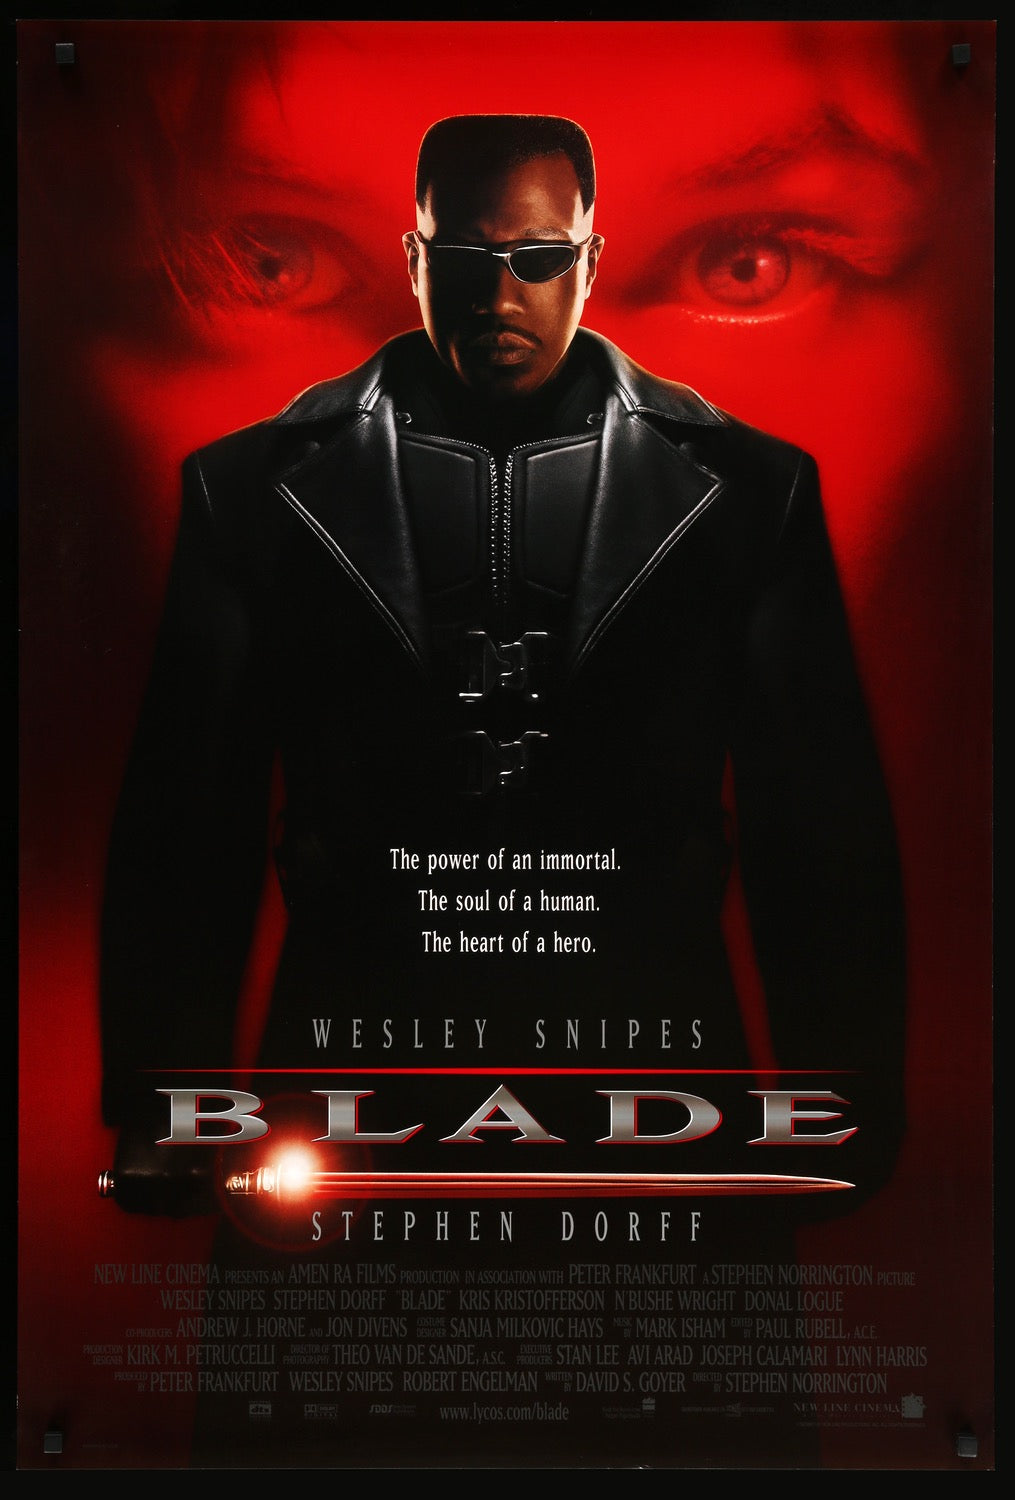 Blade (1998) original movie poster for sale at Original Film Art